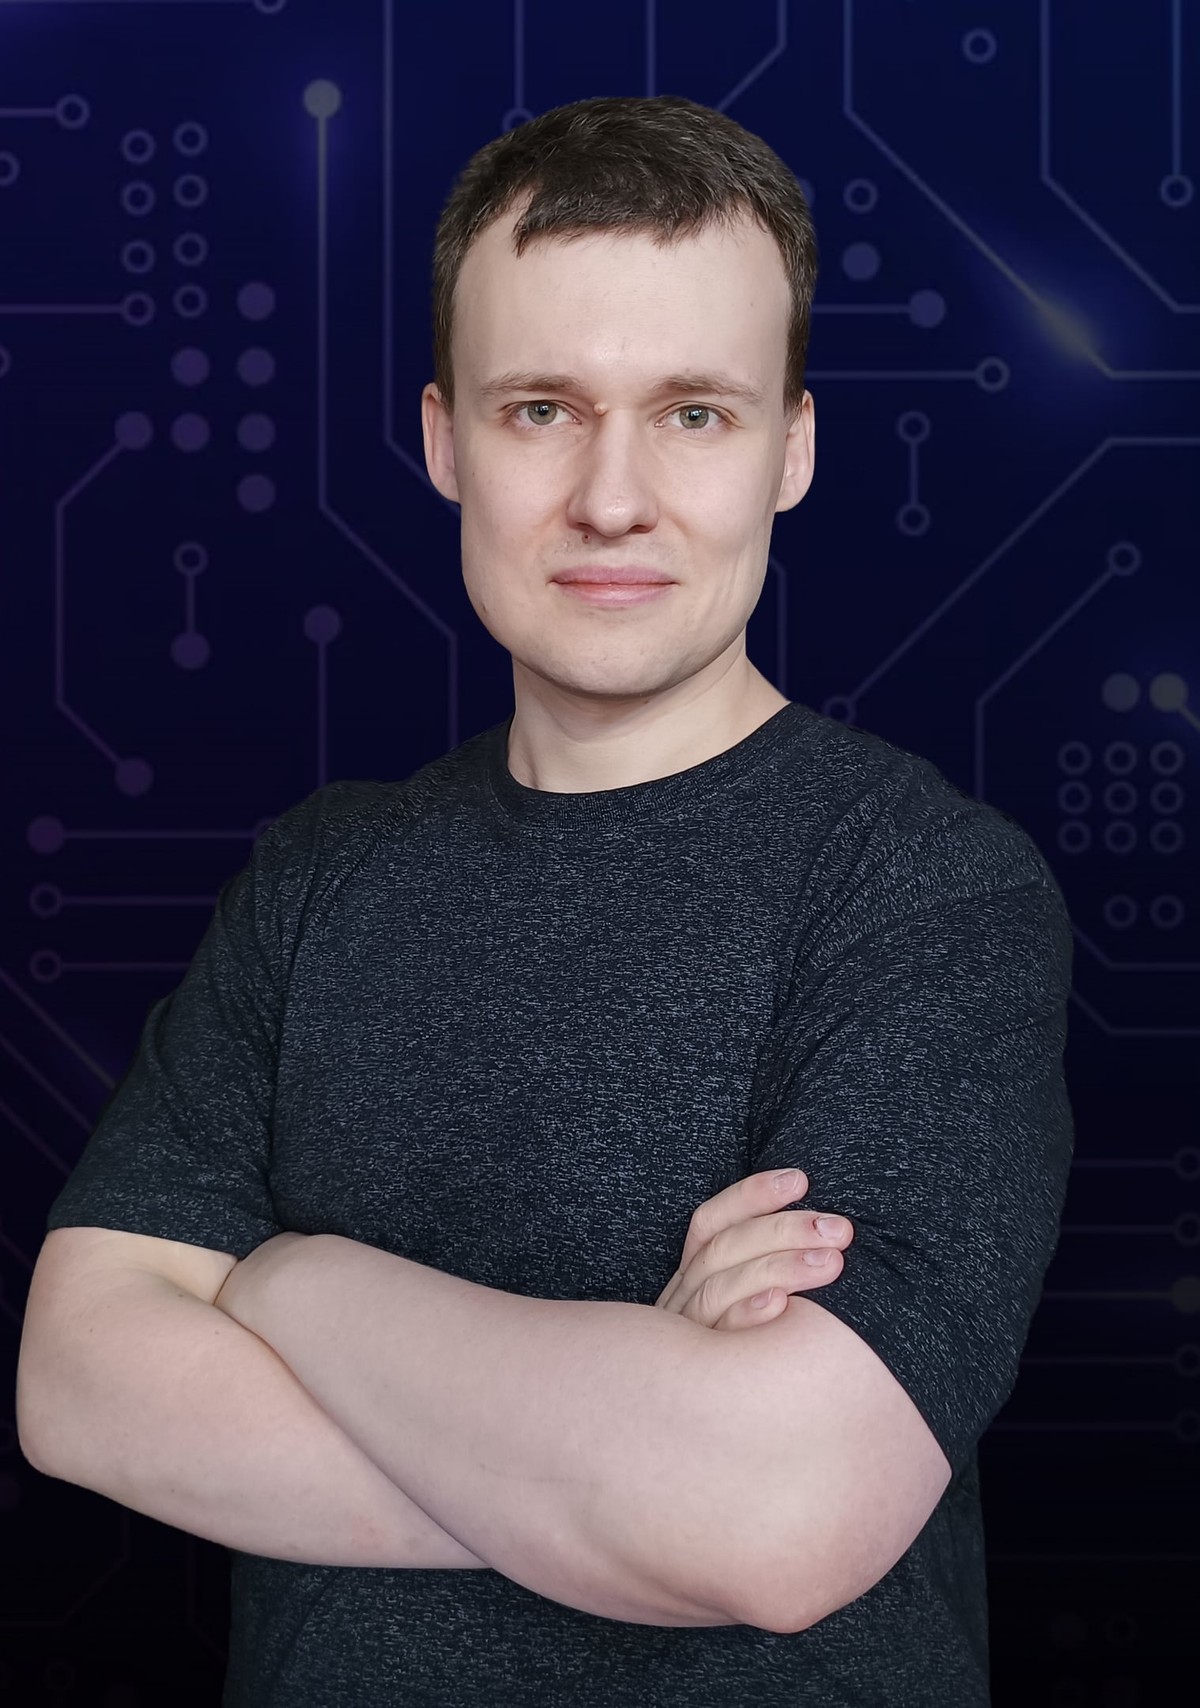 Дмитрий, компьютерный мастер в Балашихе, выпускник МГТУ МИРЭА (РТУ МИРЭА)